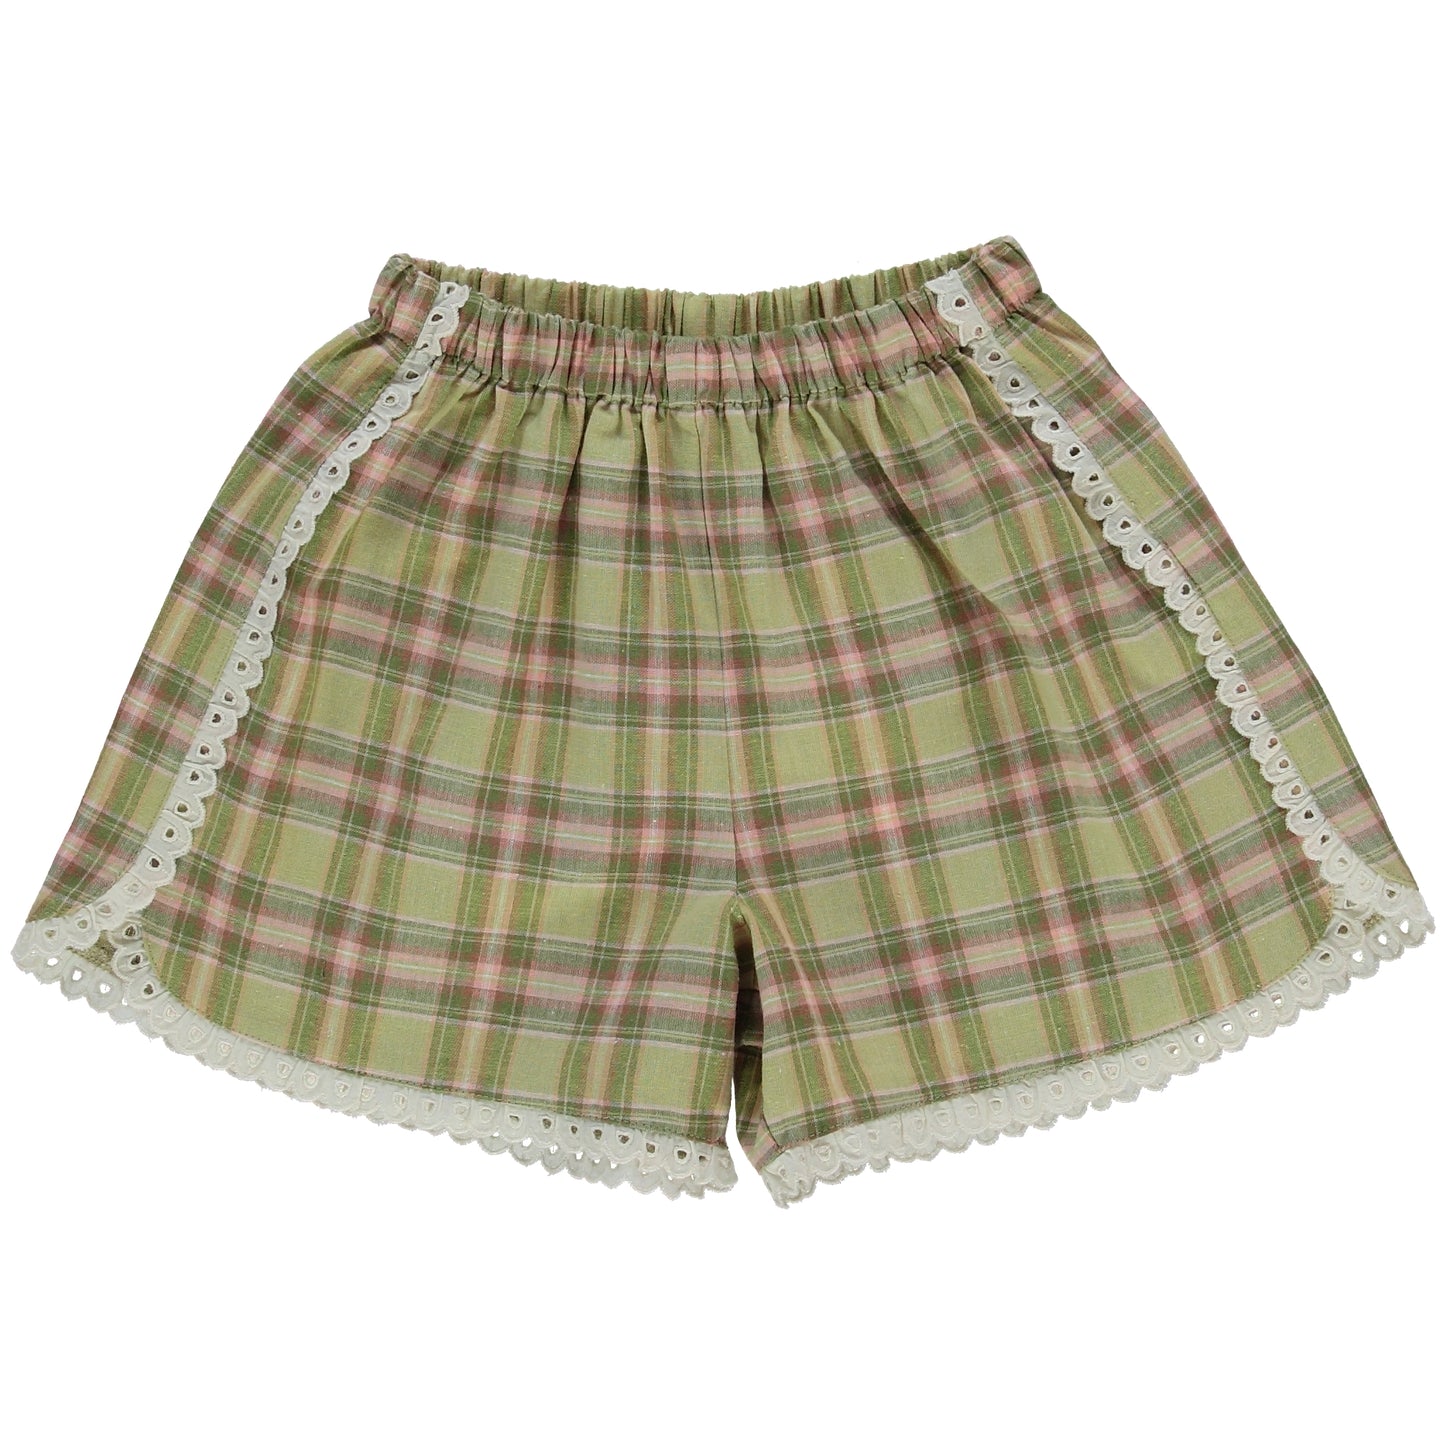 Annie Summer Organic Cotton Shorts Picnic Checkered